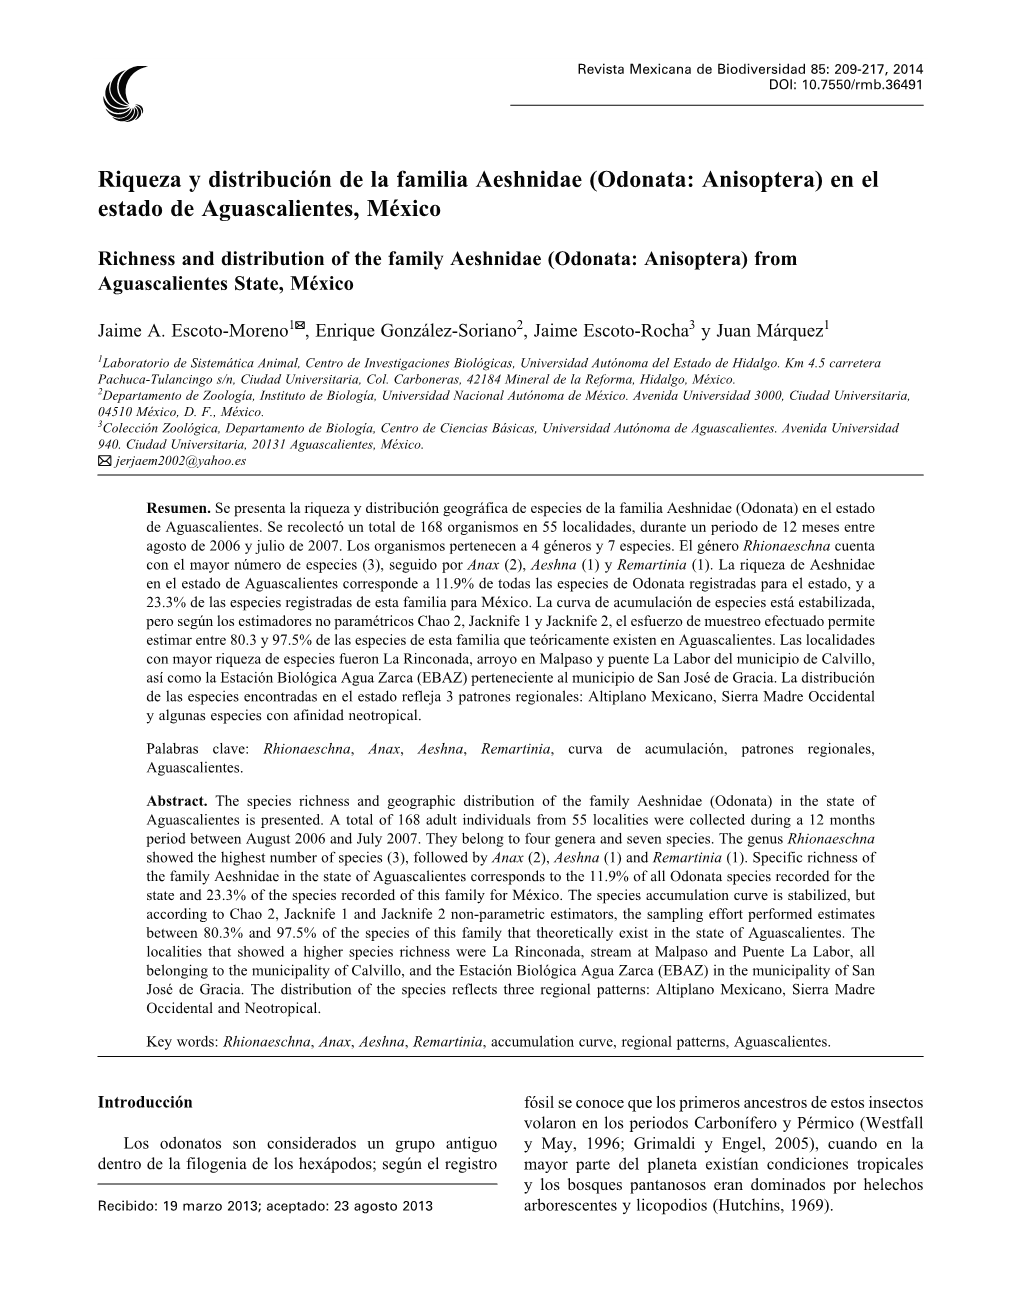 Riqueza Y Distribución De La Familia Aeshnidae (Odonata: Anisoptera) En El Estado De Aguascalientes, México